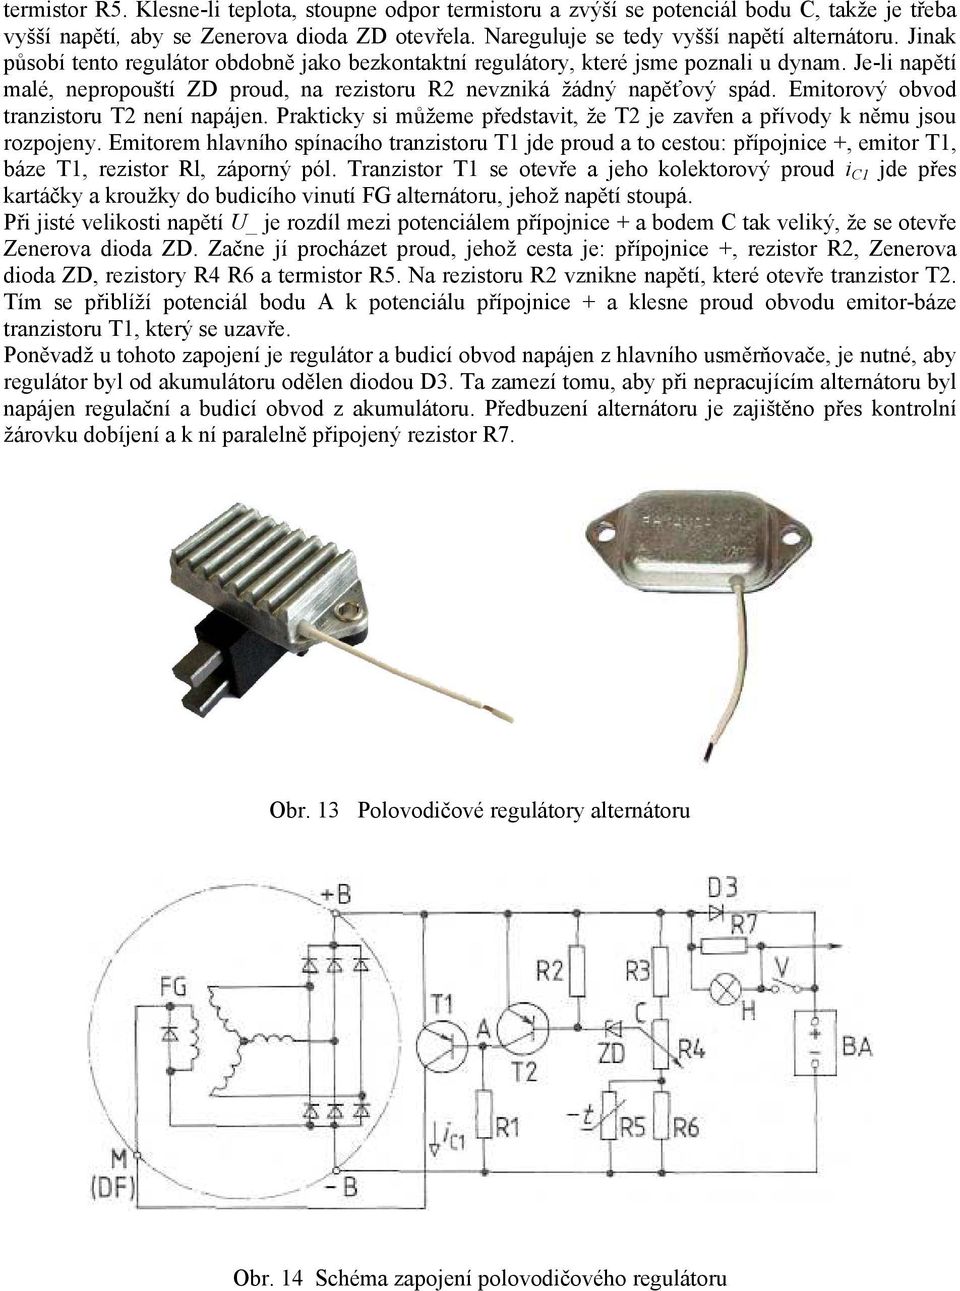 Emitorový obvod tranzistoru T2 není napájen. Prakticky si můžeme představit, že T2 je zavřen a přívody k němu jsou rozpojeny.